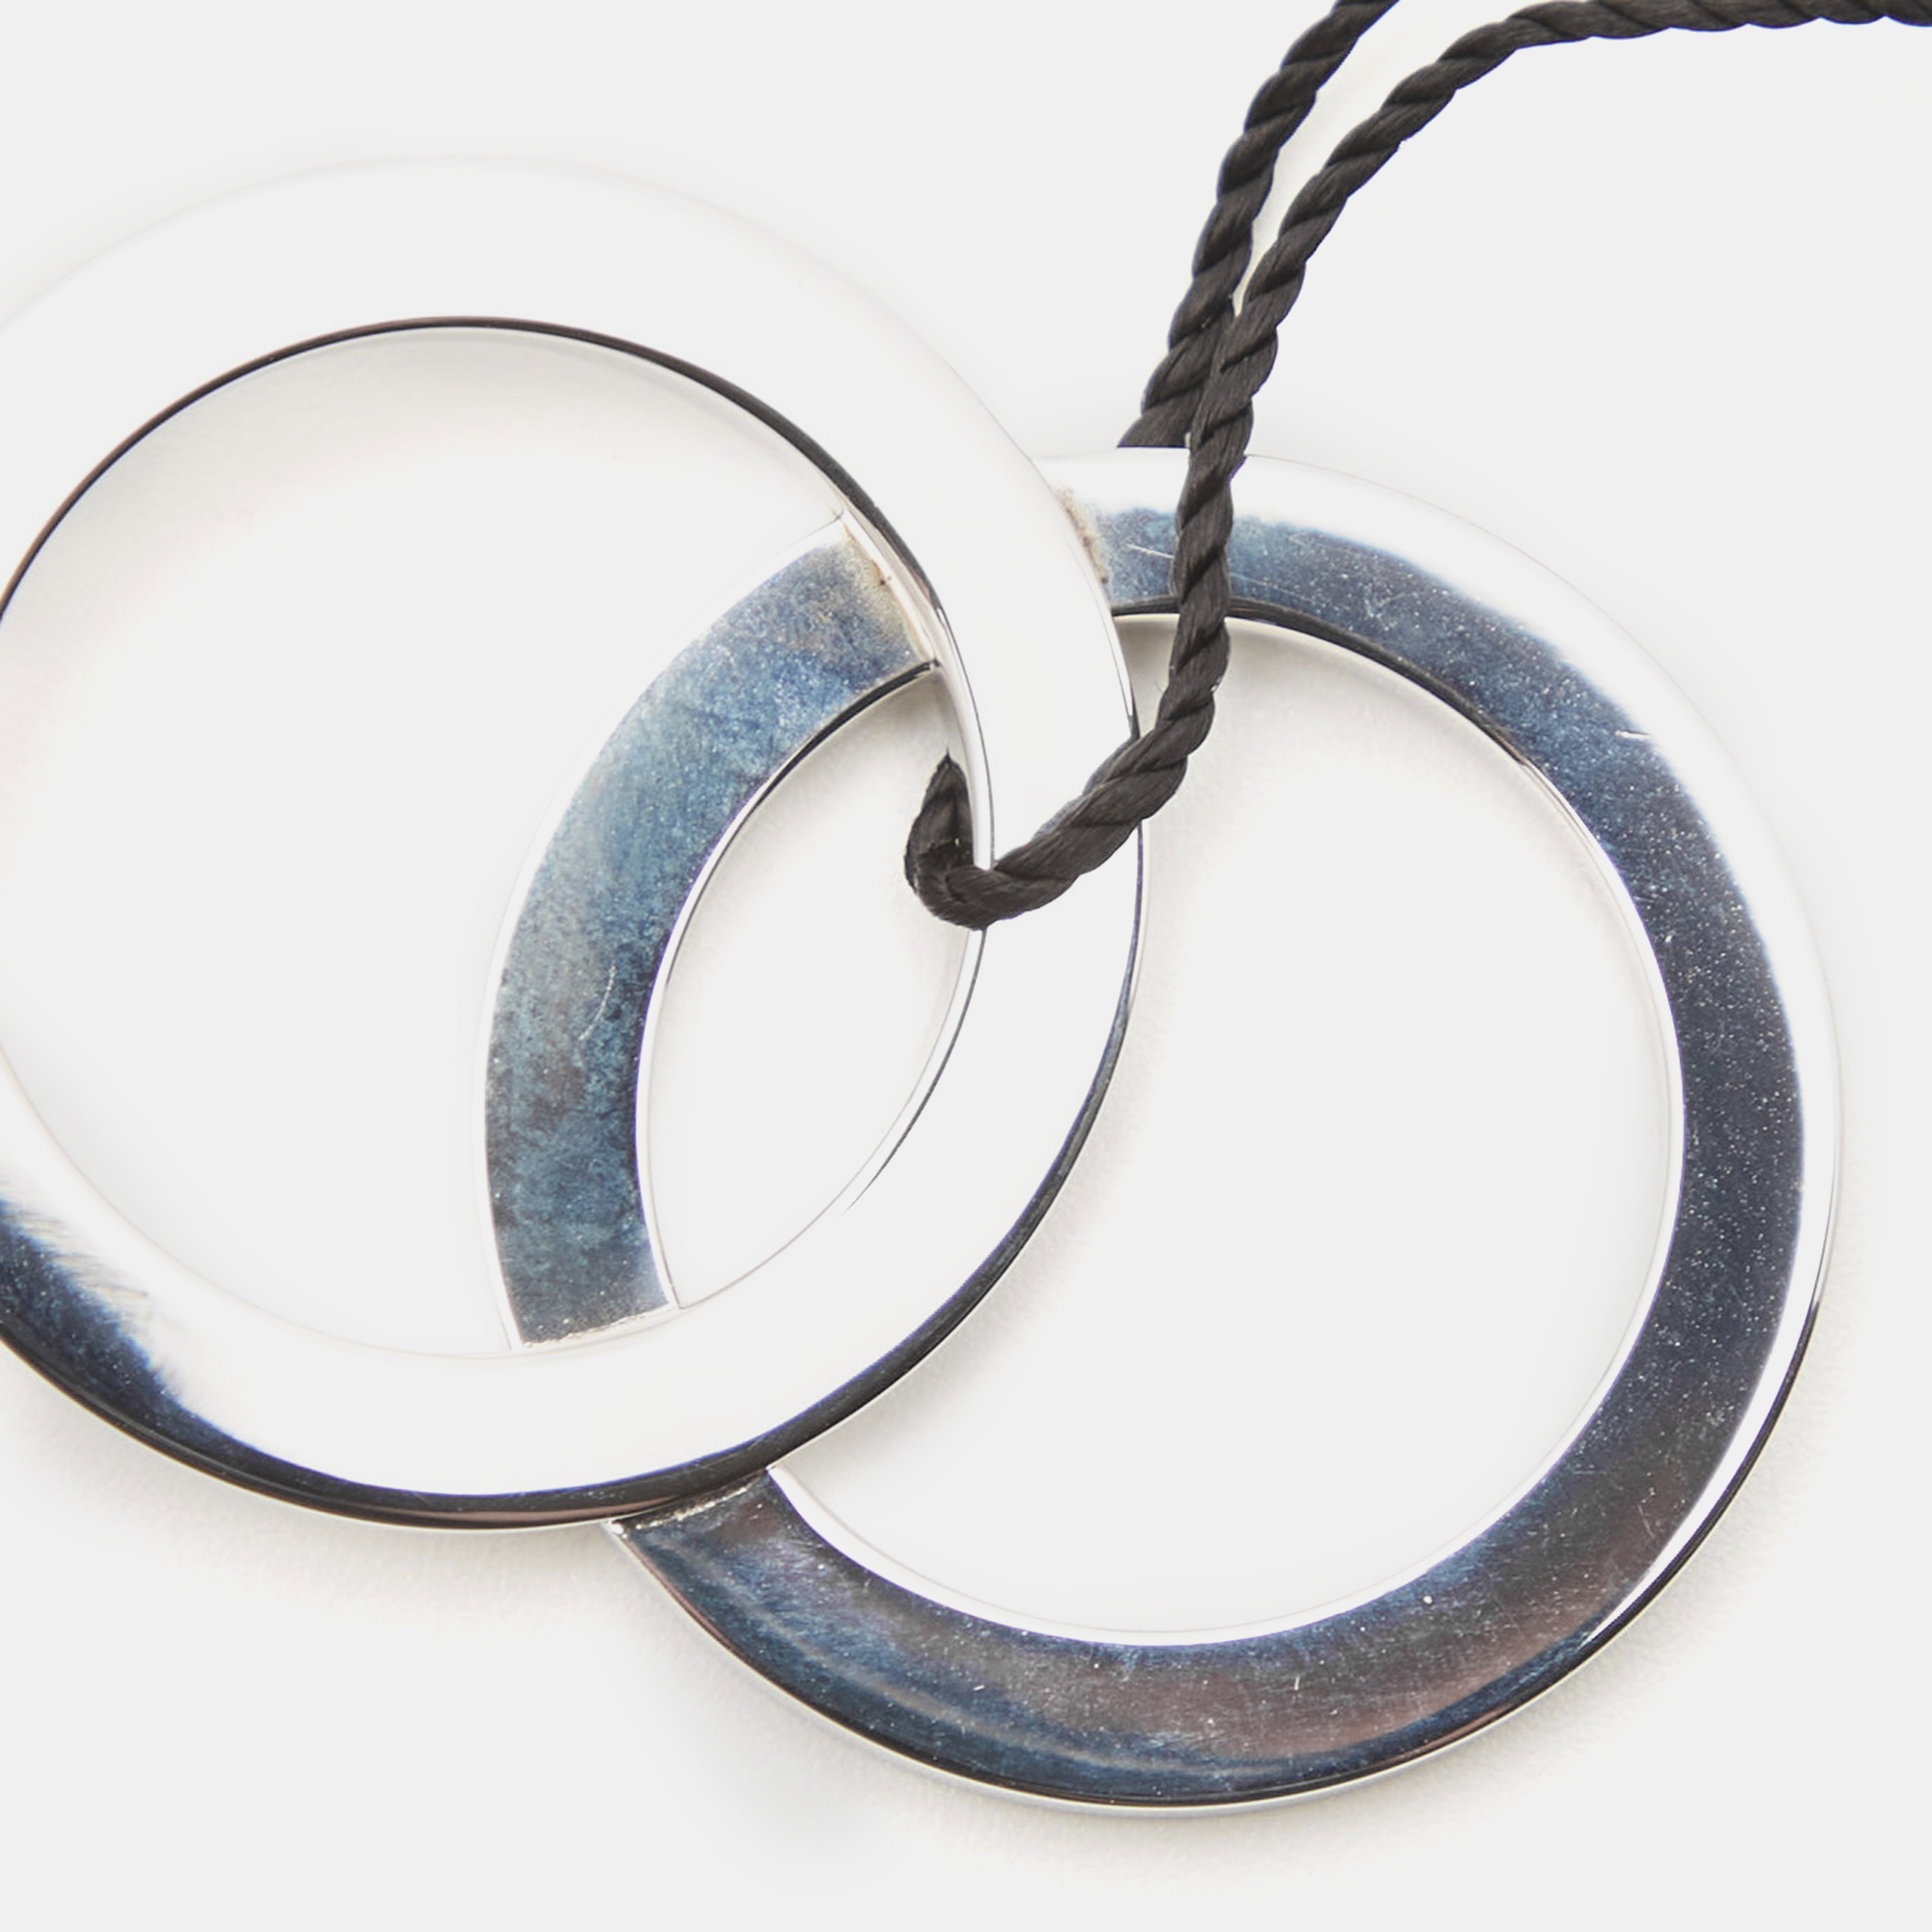 Bvlgari Fortuna Grande Sterling Silver Pendant Black Cord Necklace